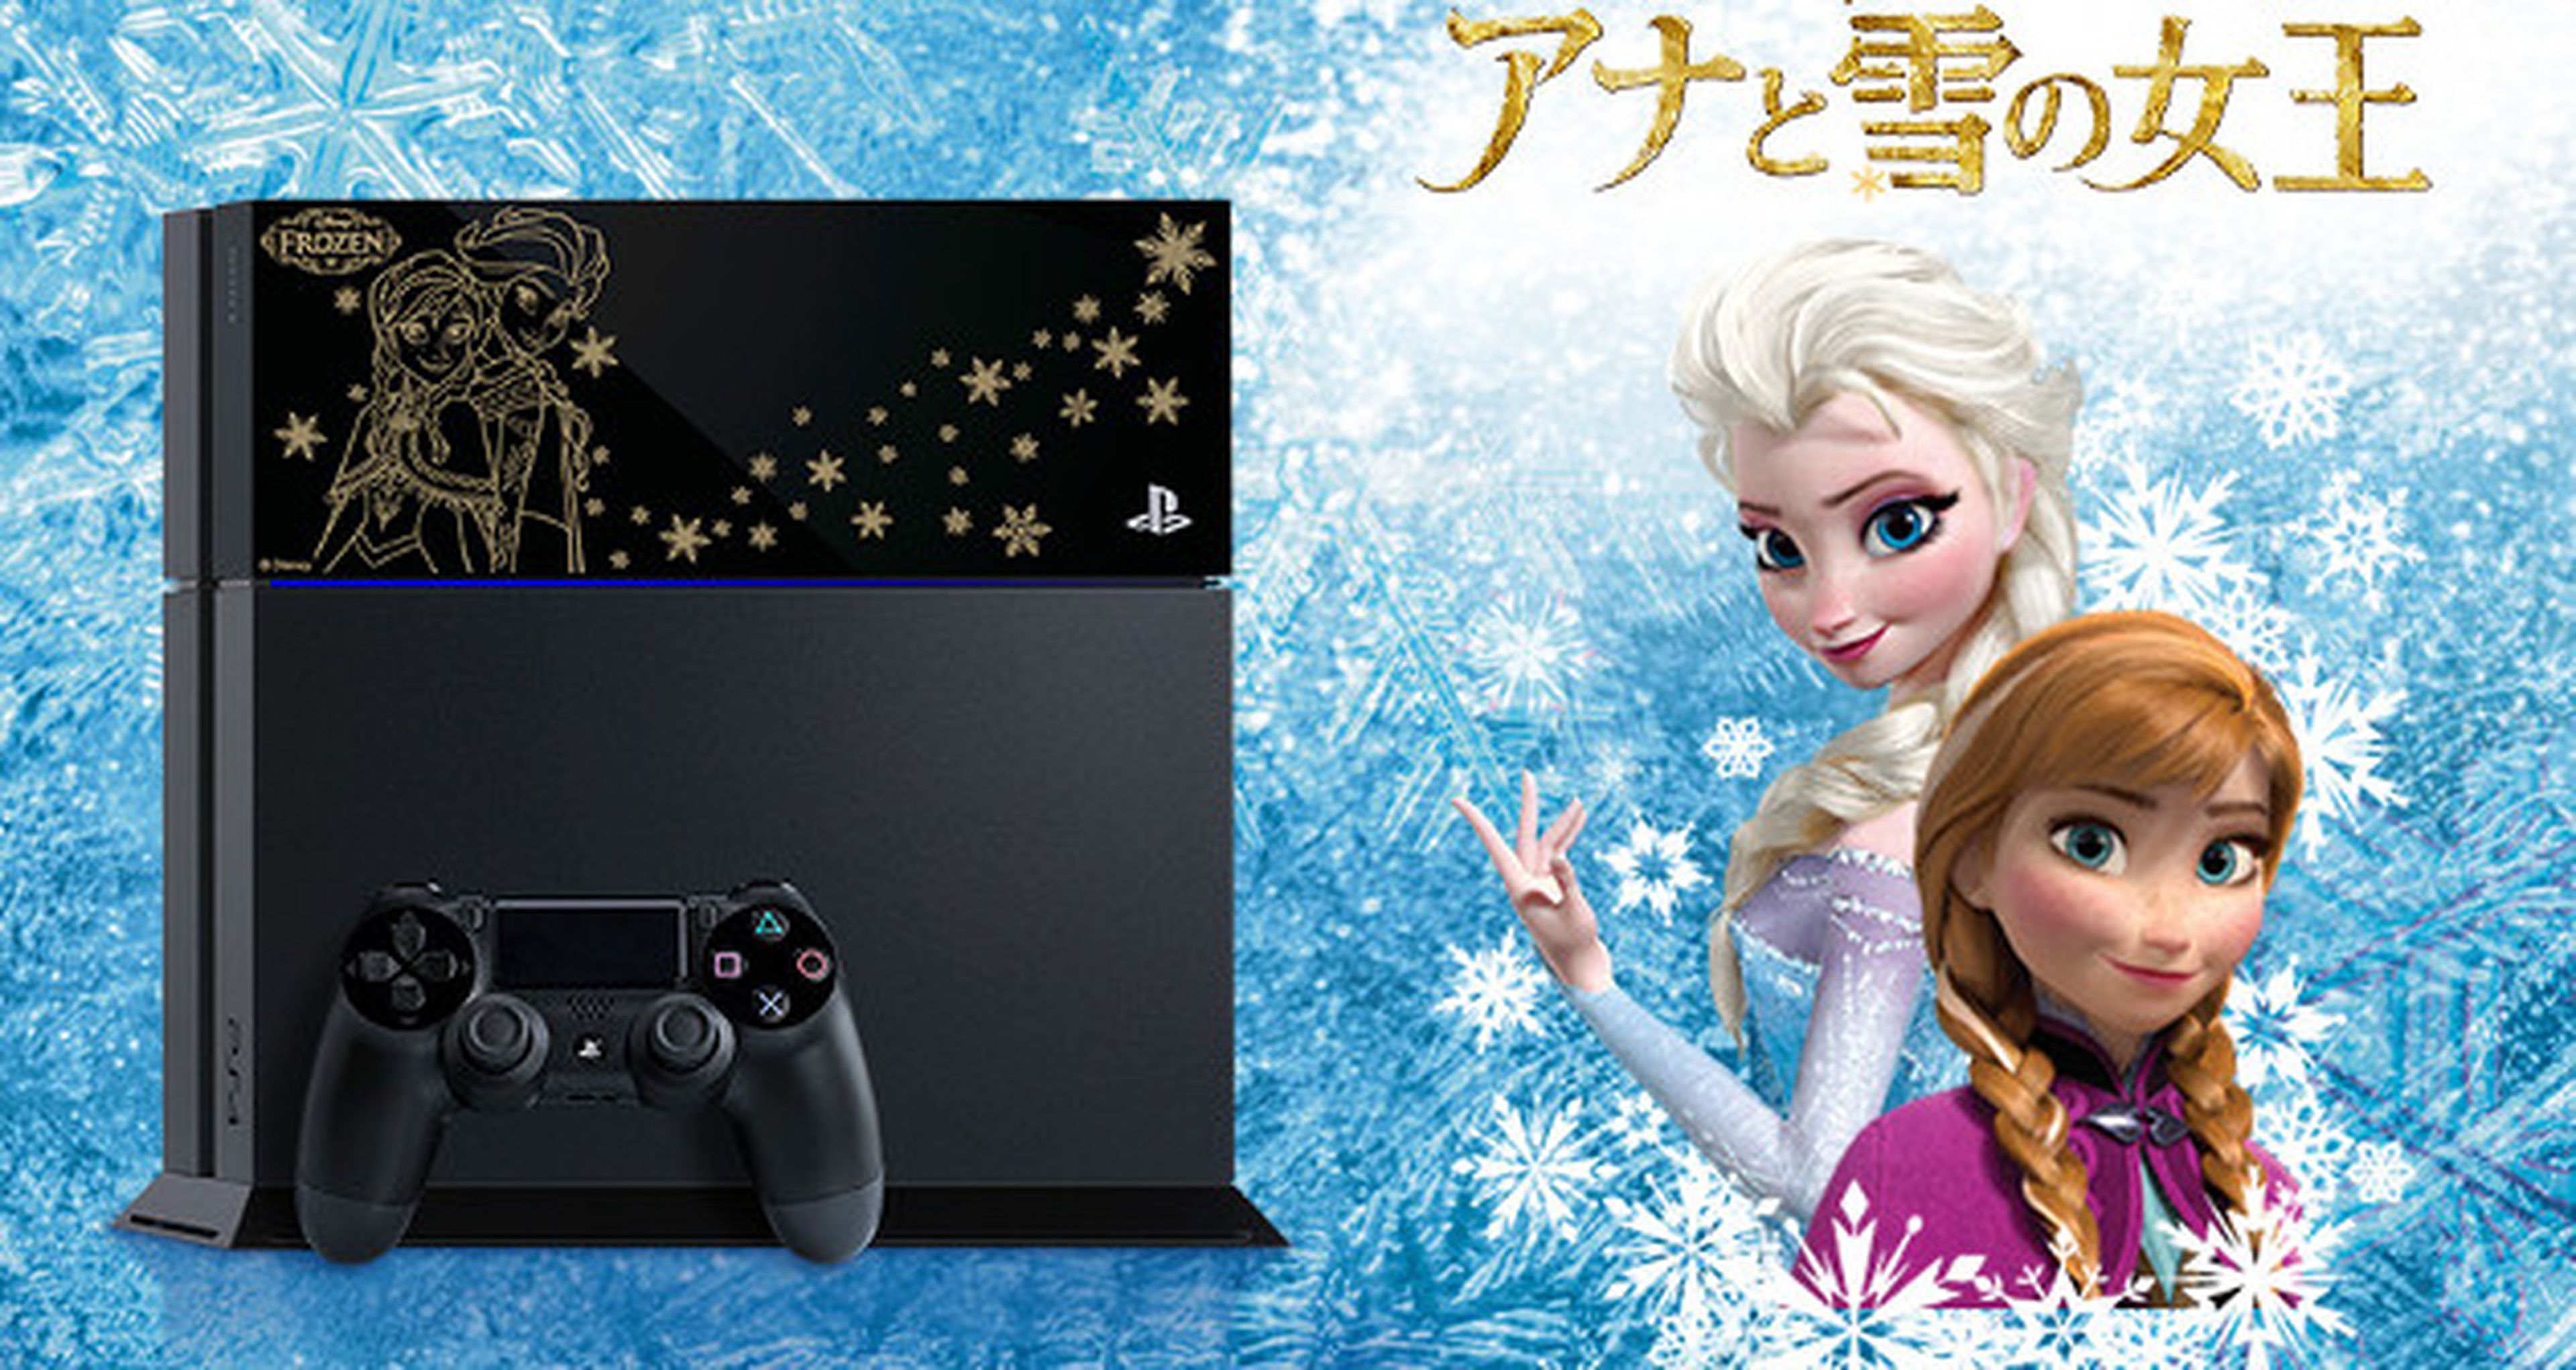 Sony vende en Japón una versión de PS4 inspirada en Frozen